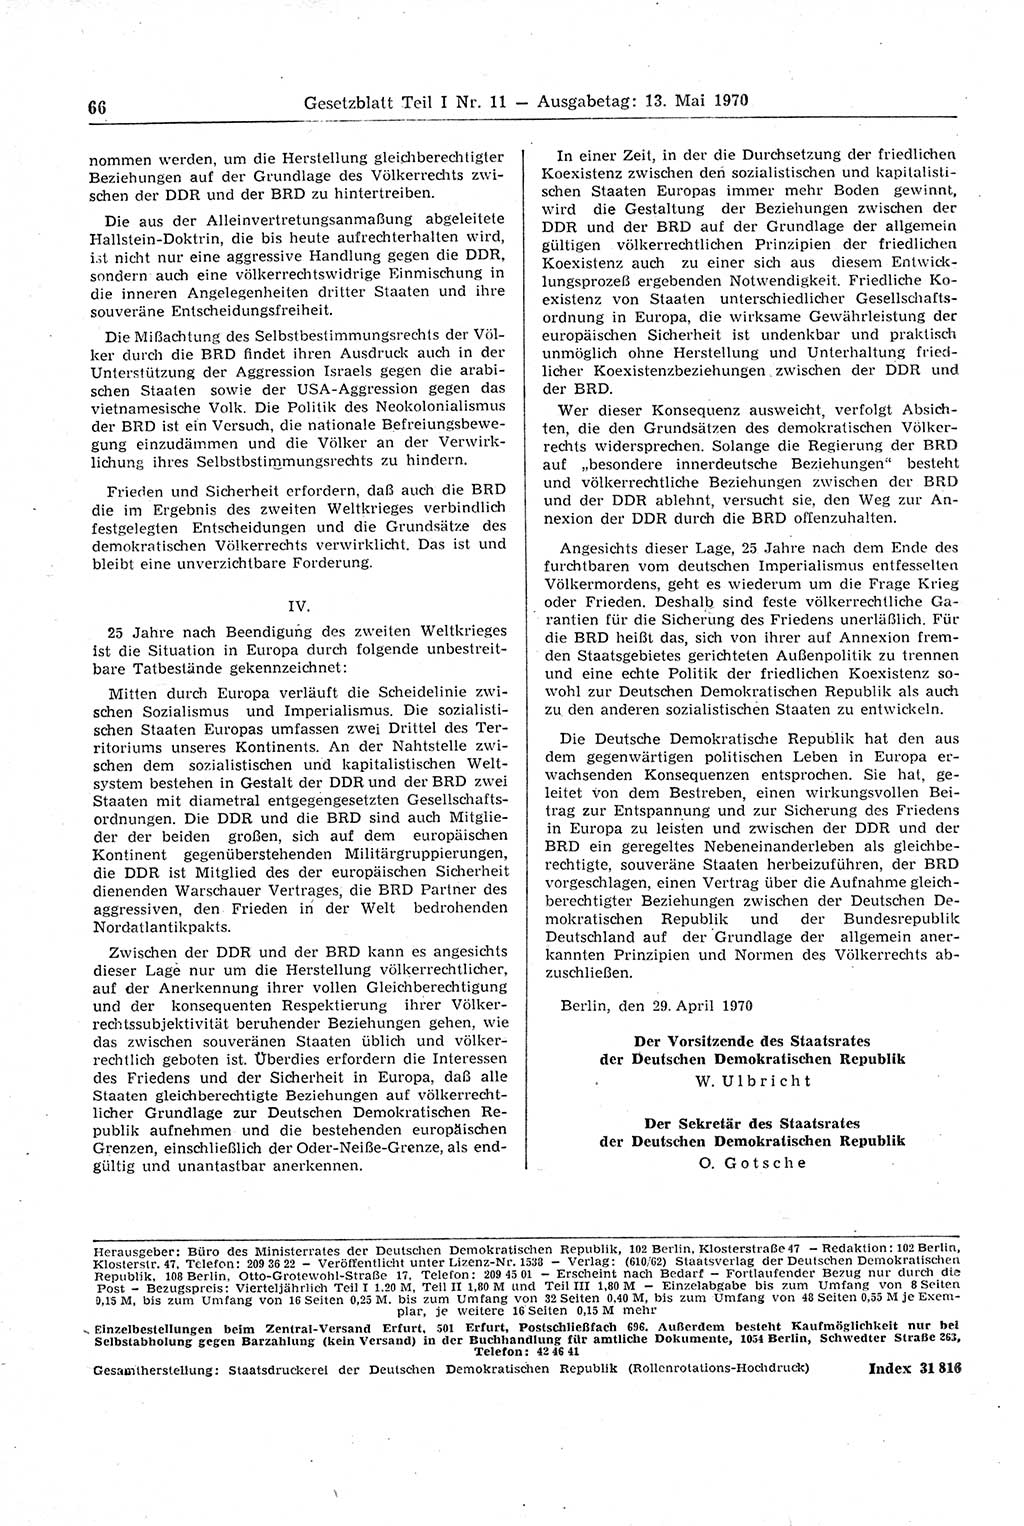 Gesetzblatt (GBl.) der Deutschen Demokratischen Republik (DDR) Teil Ⅰ 1970, Seite 66 (GBl. DDR Ⅰ 1970, S. 66)